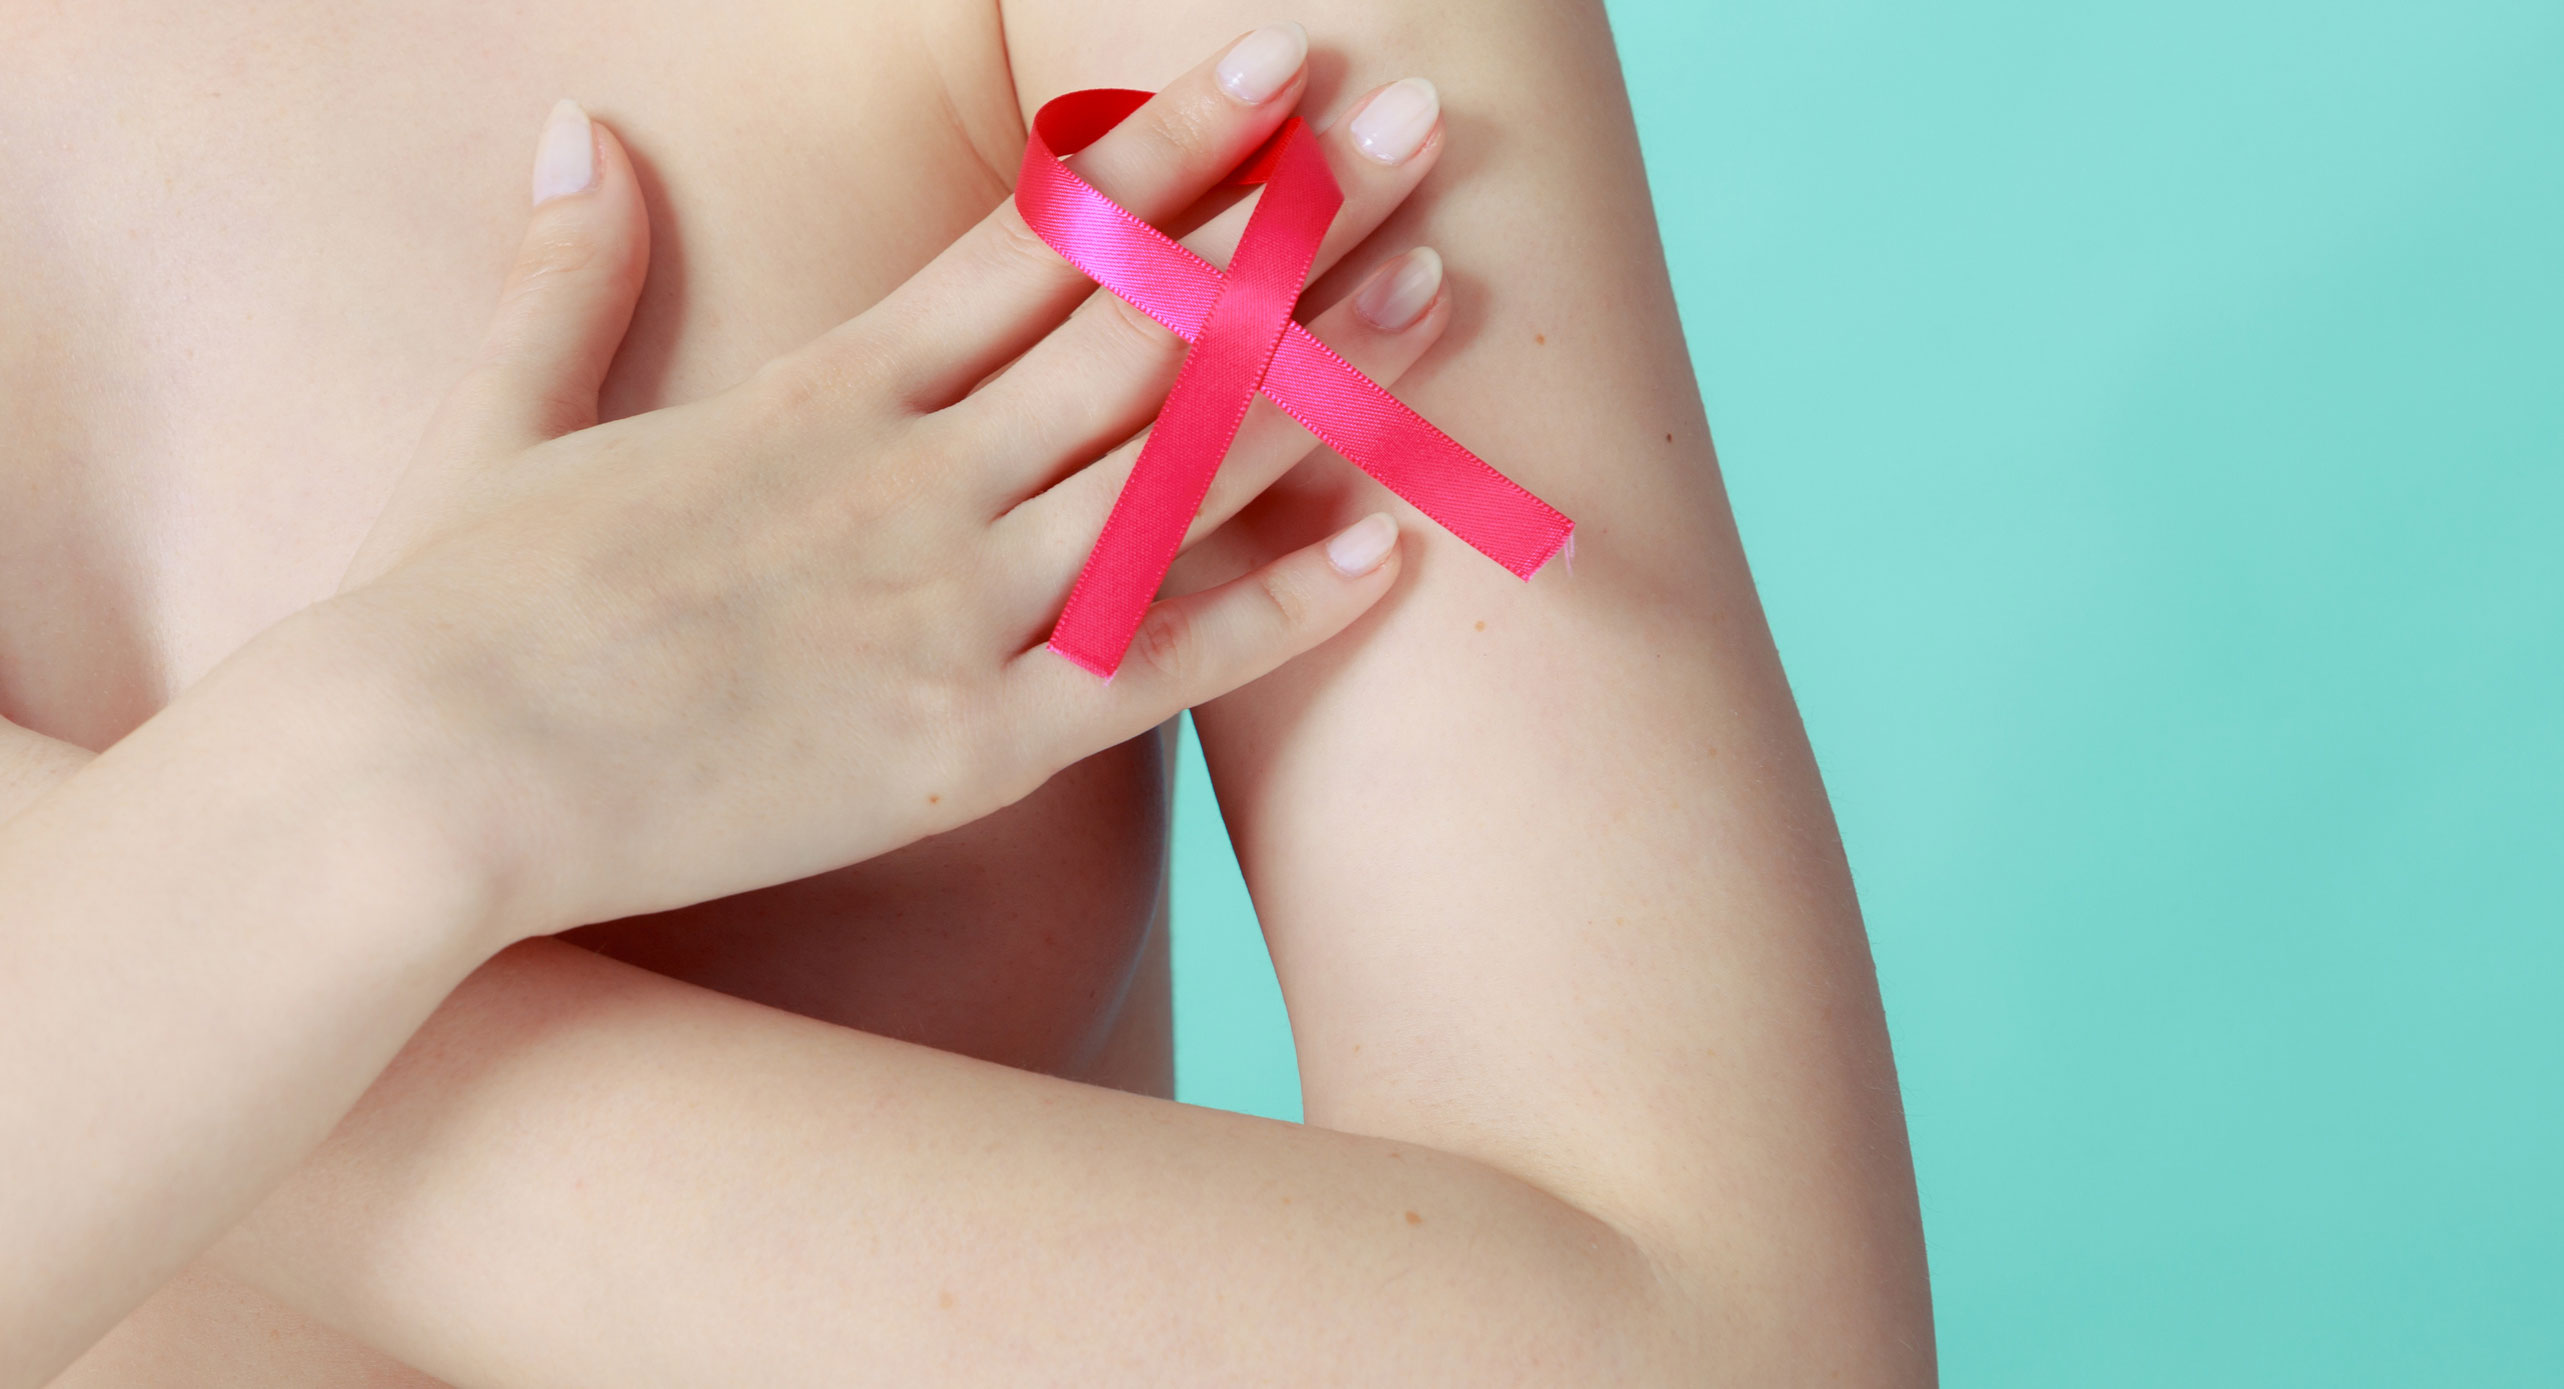 Le pronostic des métastases du cancer du sein progresse